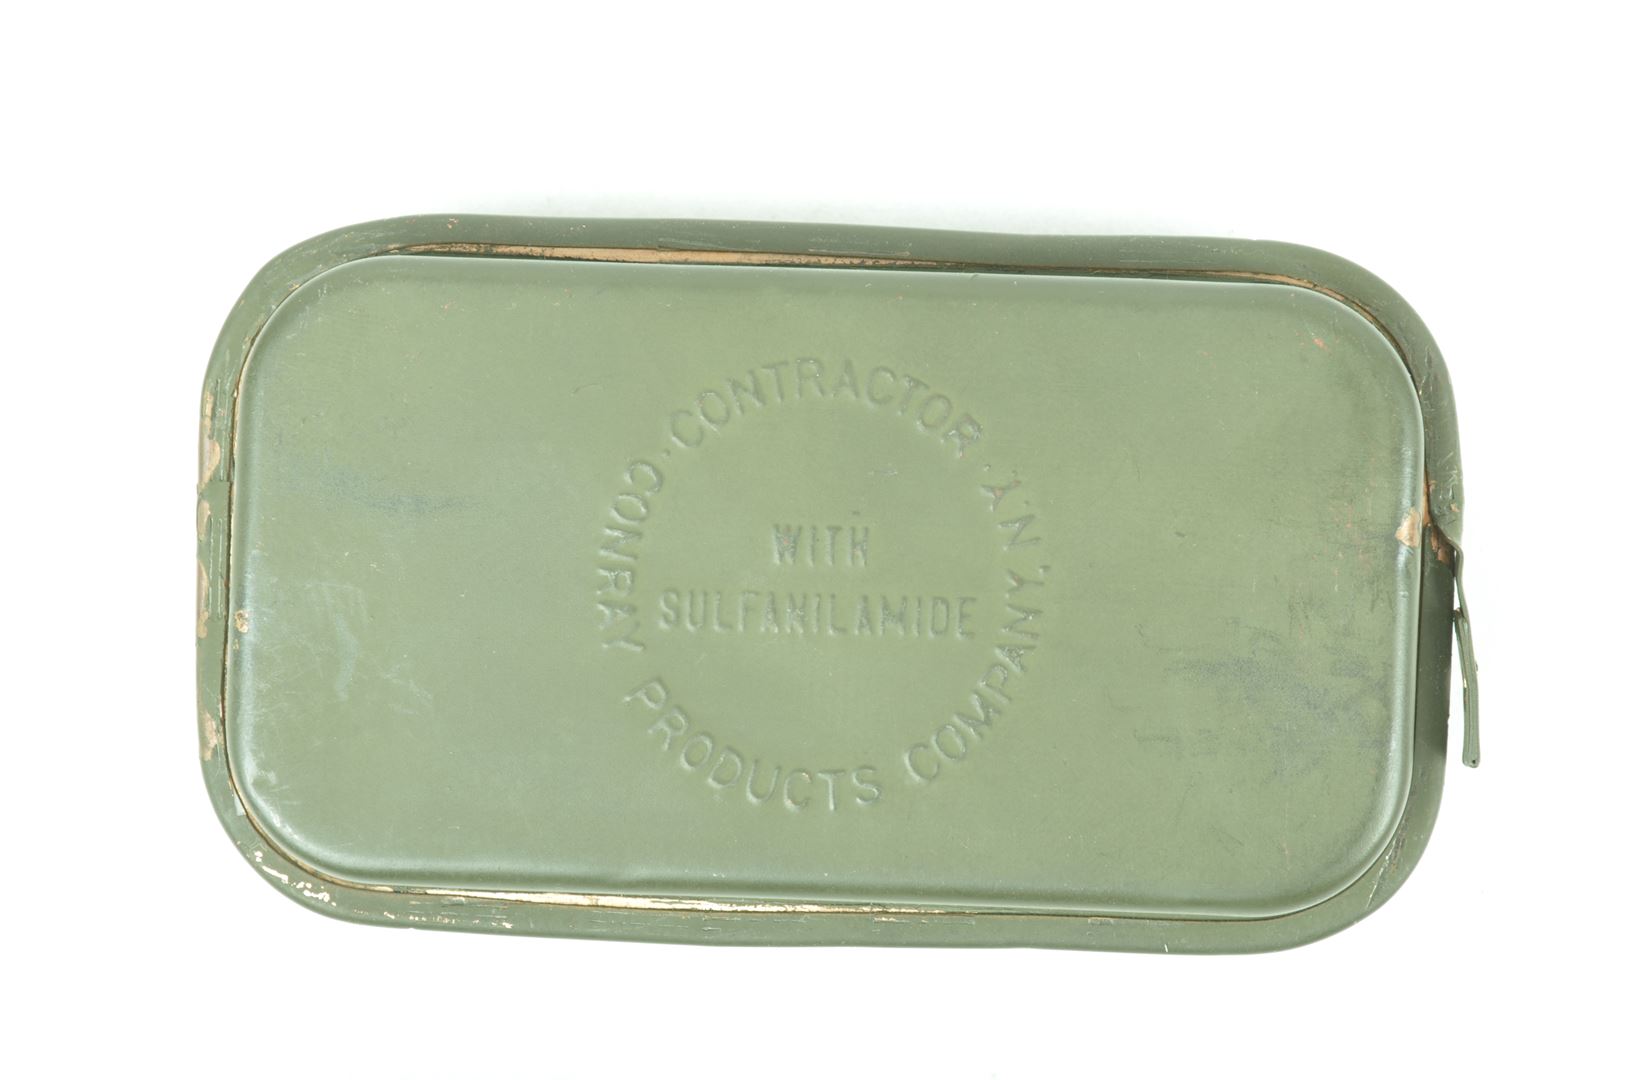 Pochette à pansement British made datée 1944 + pansement